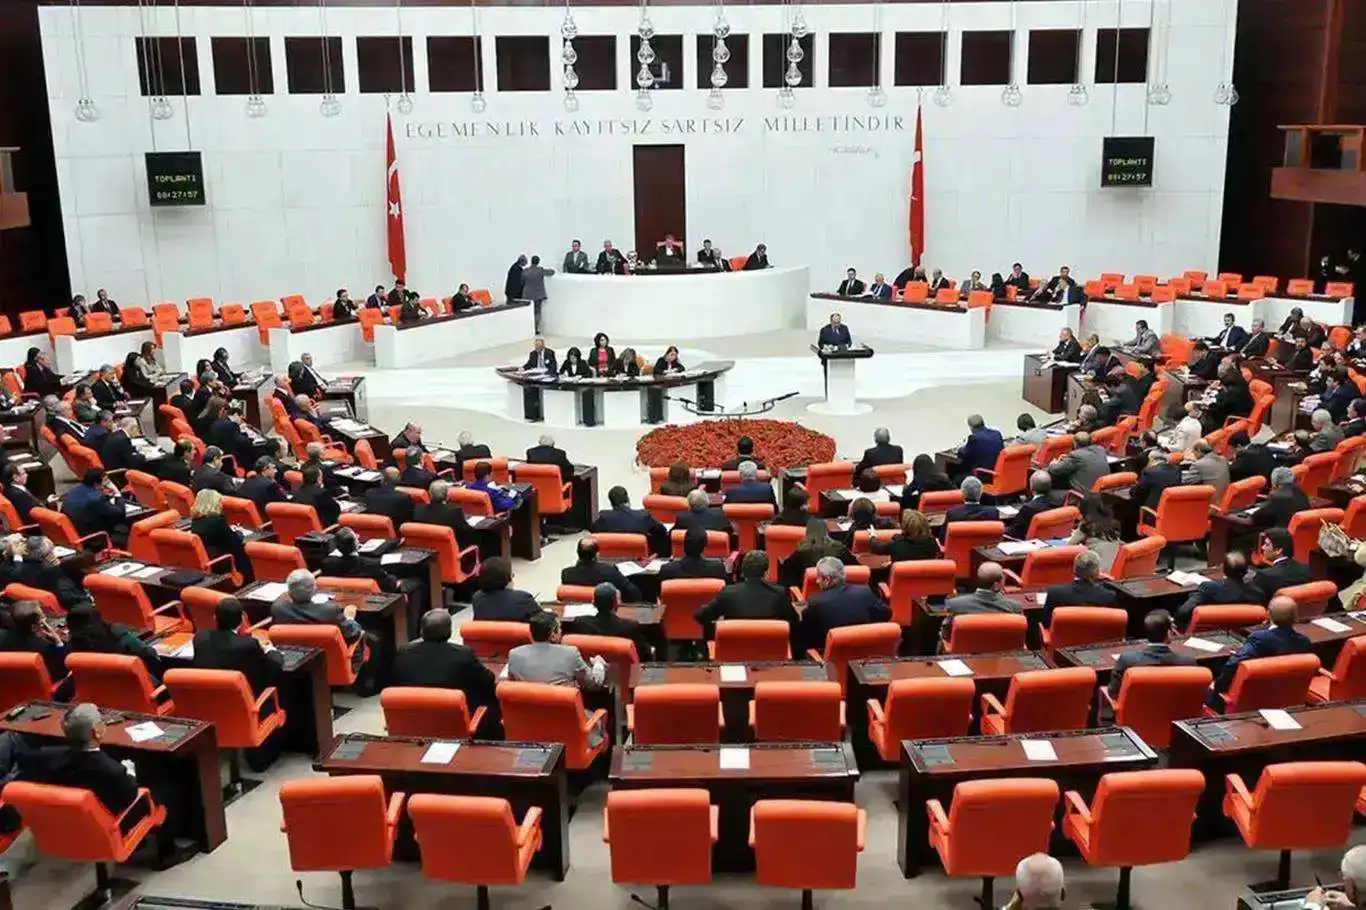 بحث در مورد لایحه پیشنهاد شده در رابطه با نسل کشی صورت گرفته در غزه توسط هداپار در مجلس ترکیه پذیرفته شد